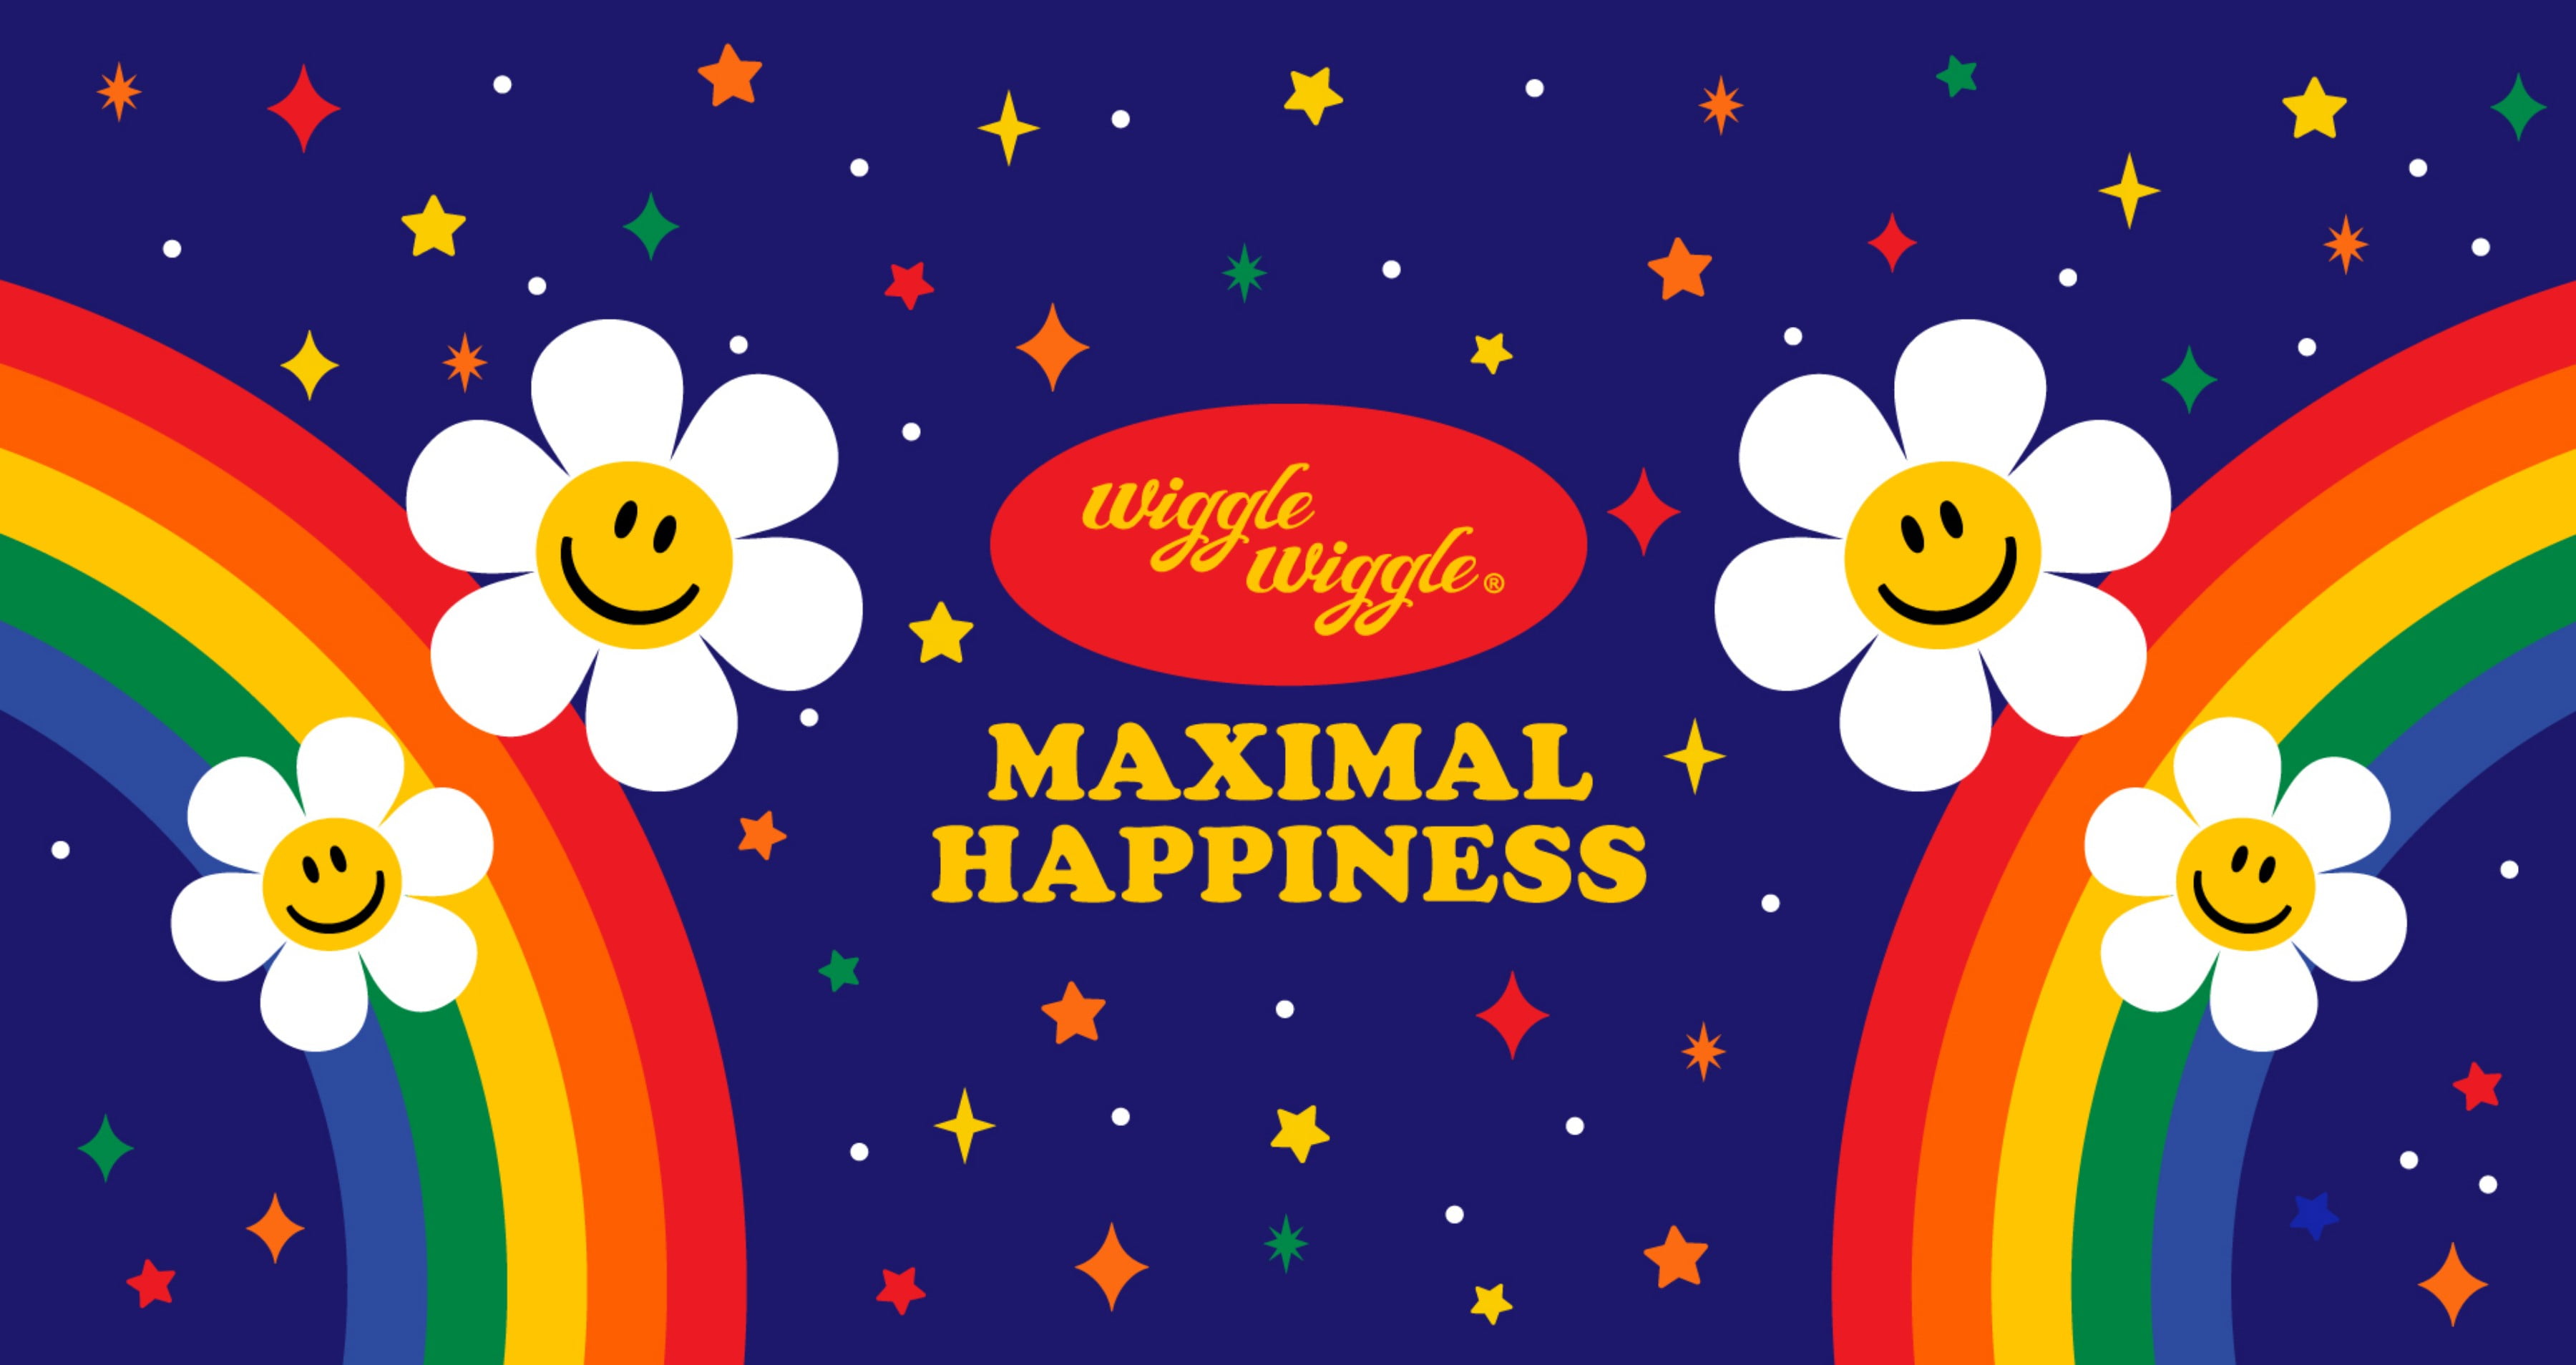 스마일위러브와 위글위글 로고 사진, wigglewiggle maximal happiness